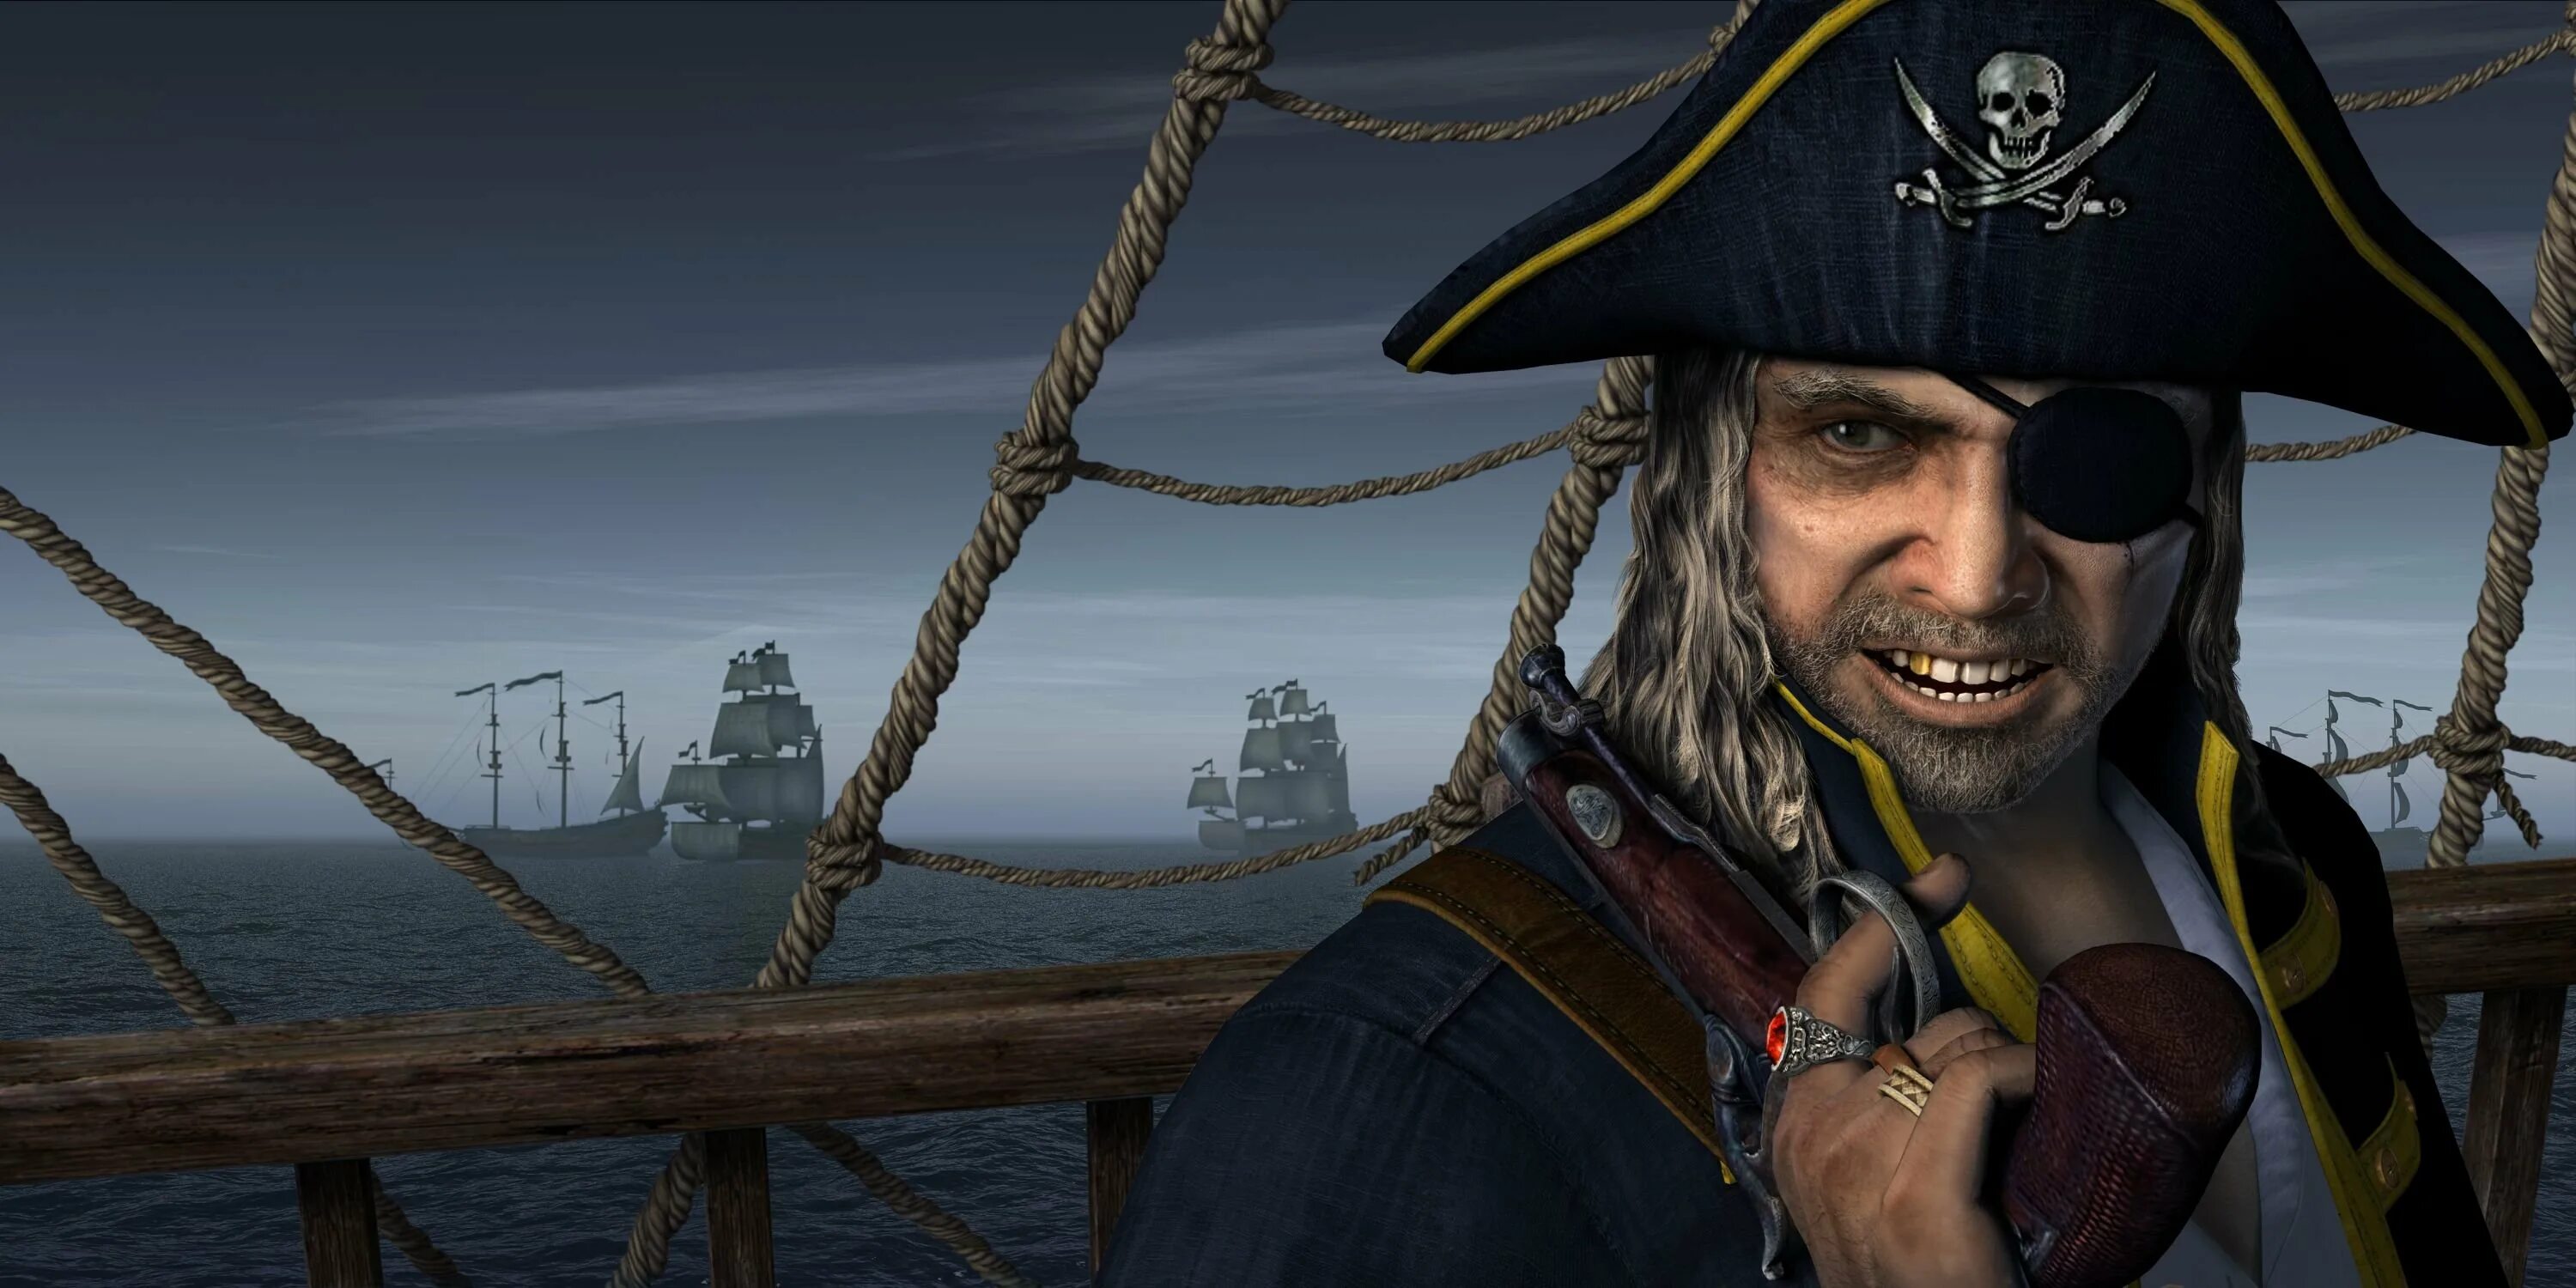 Пиратский поинт. Даниэль Монбар пират. Флибустьеры пираты Корсары. Джек Воробей одноглазый пират.